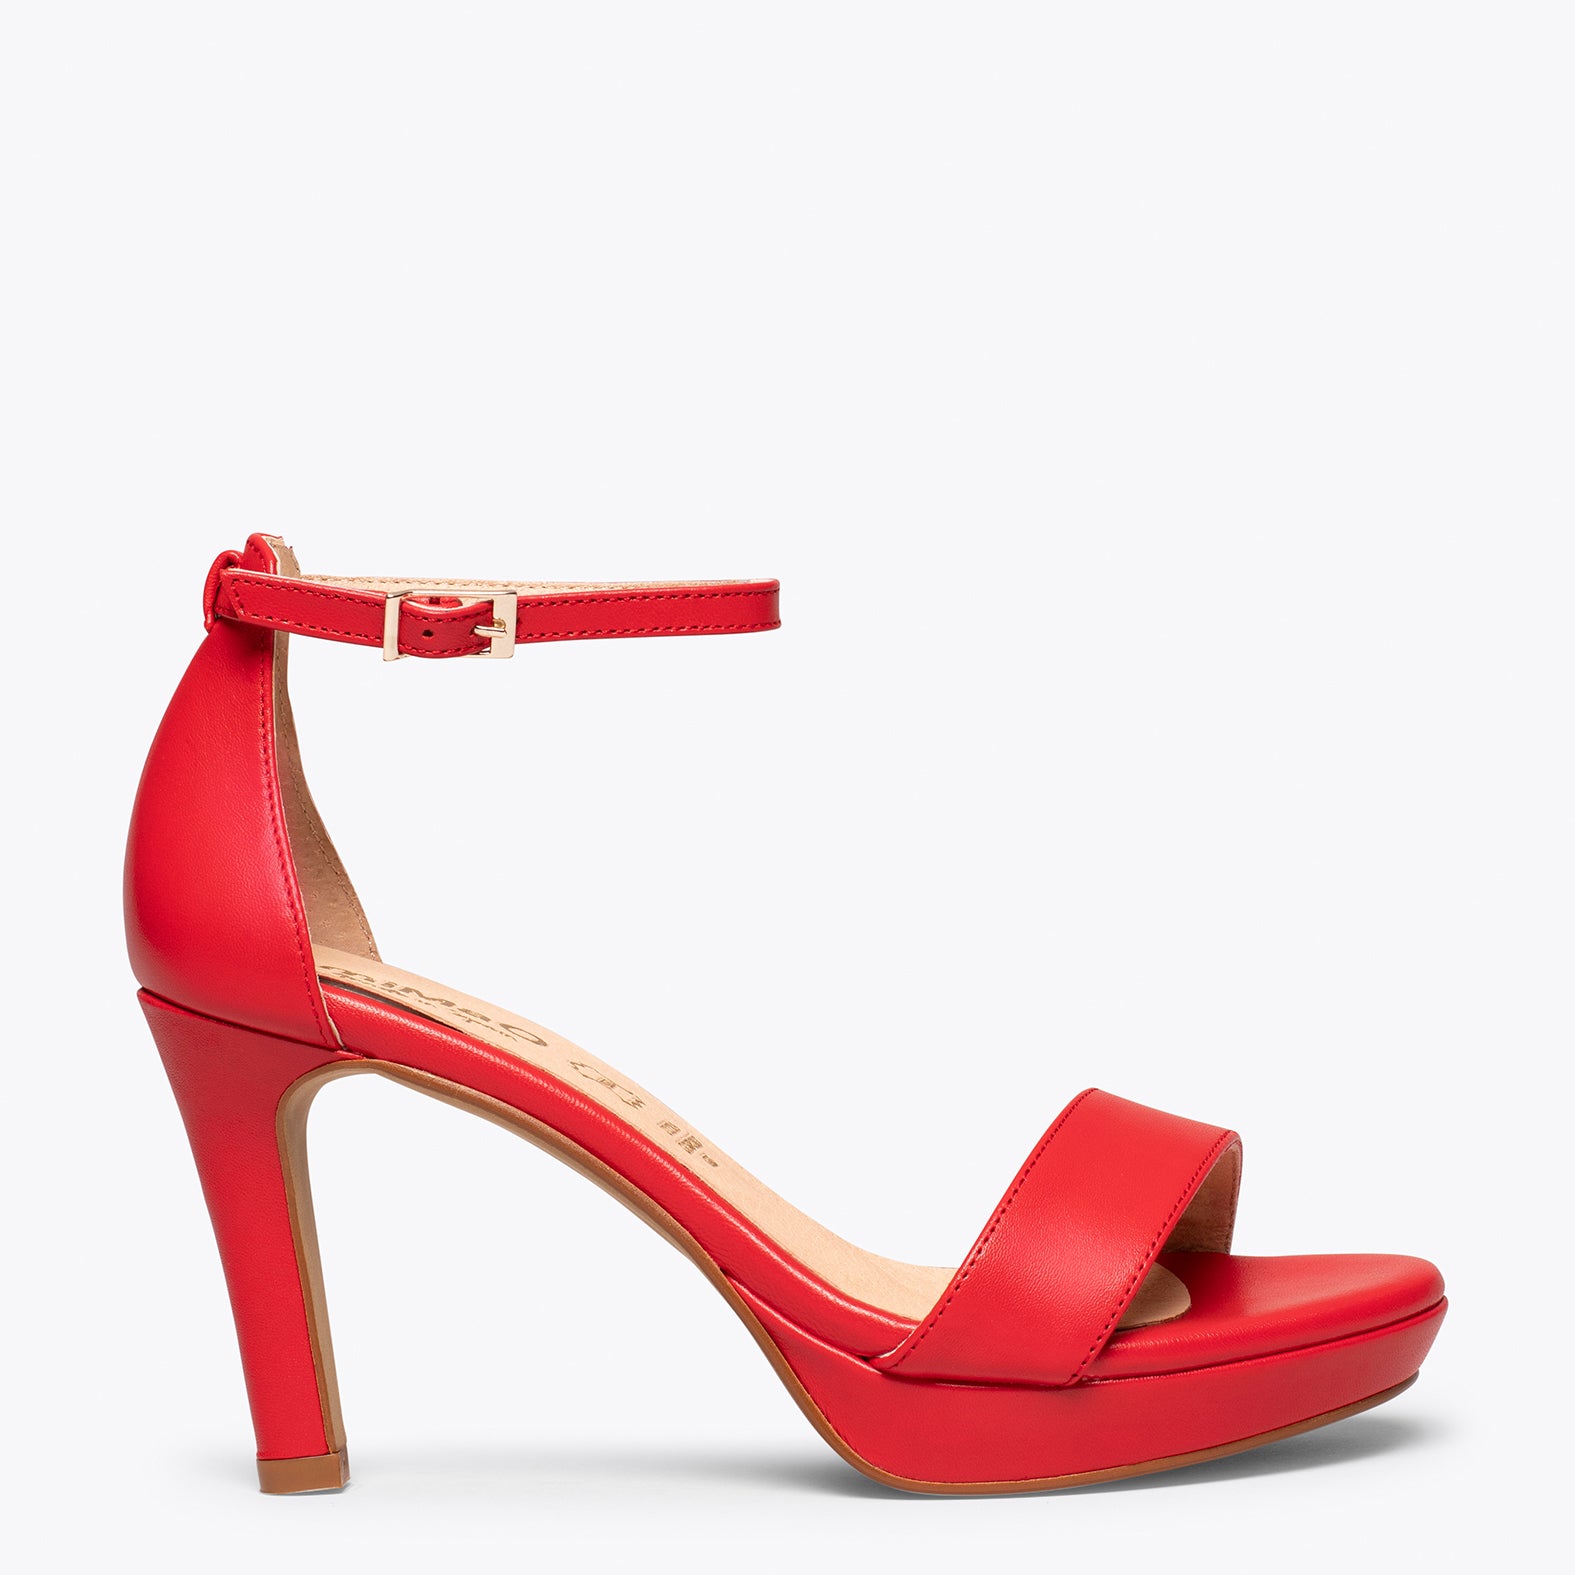 PARTY – RED elegant sandal with platform